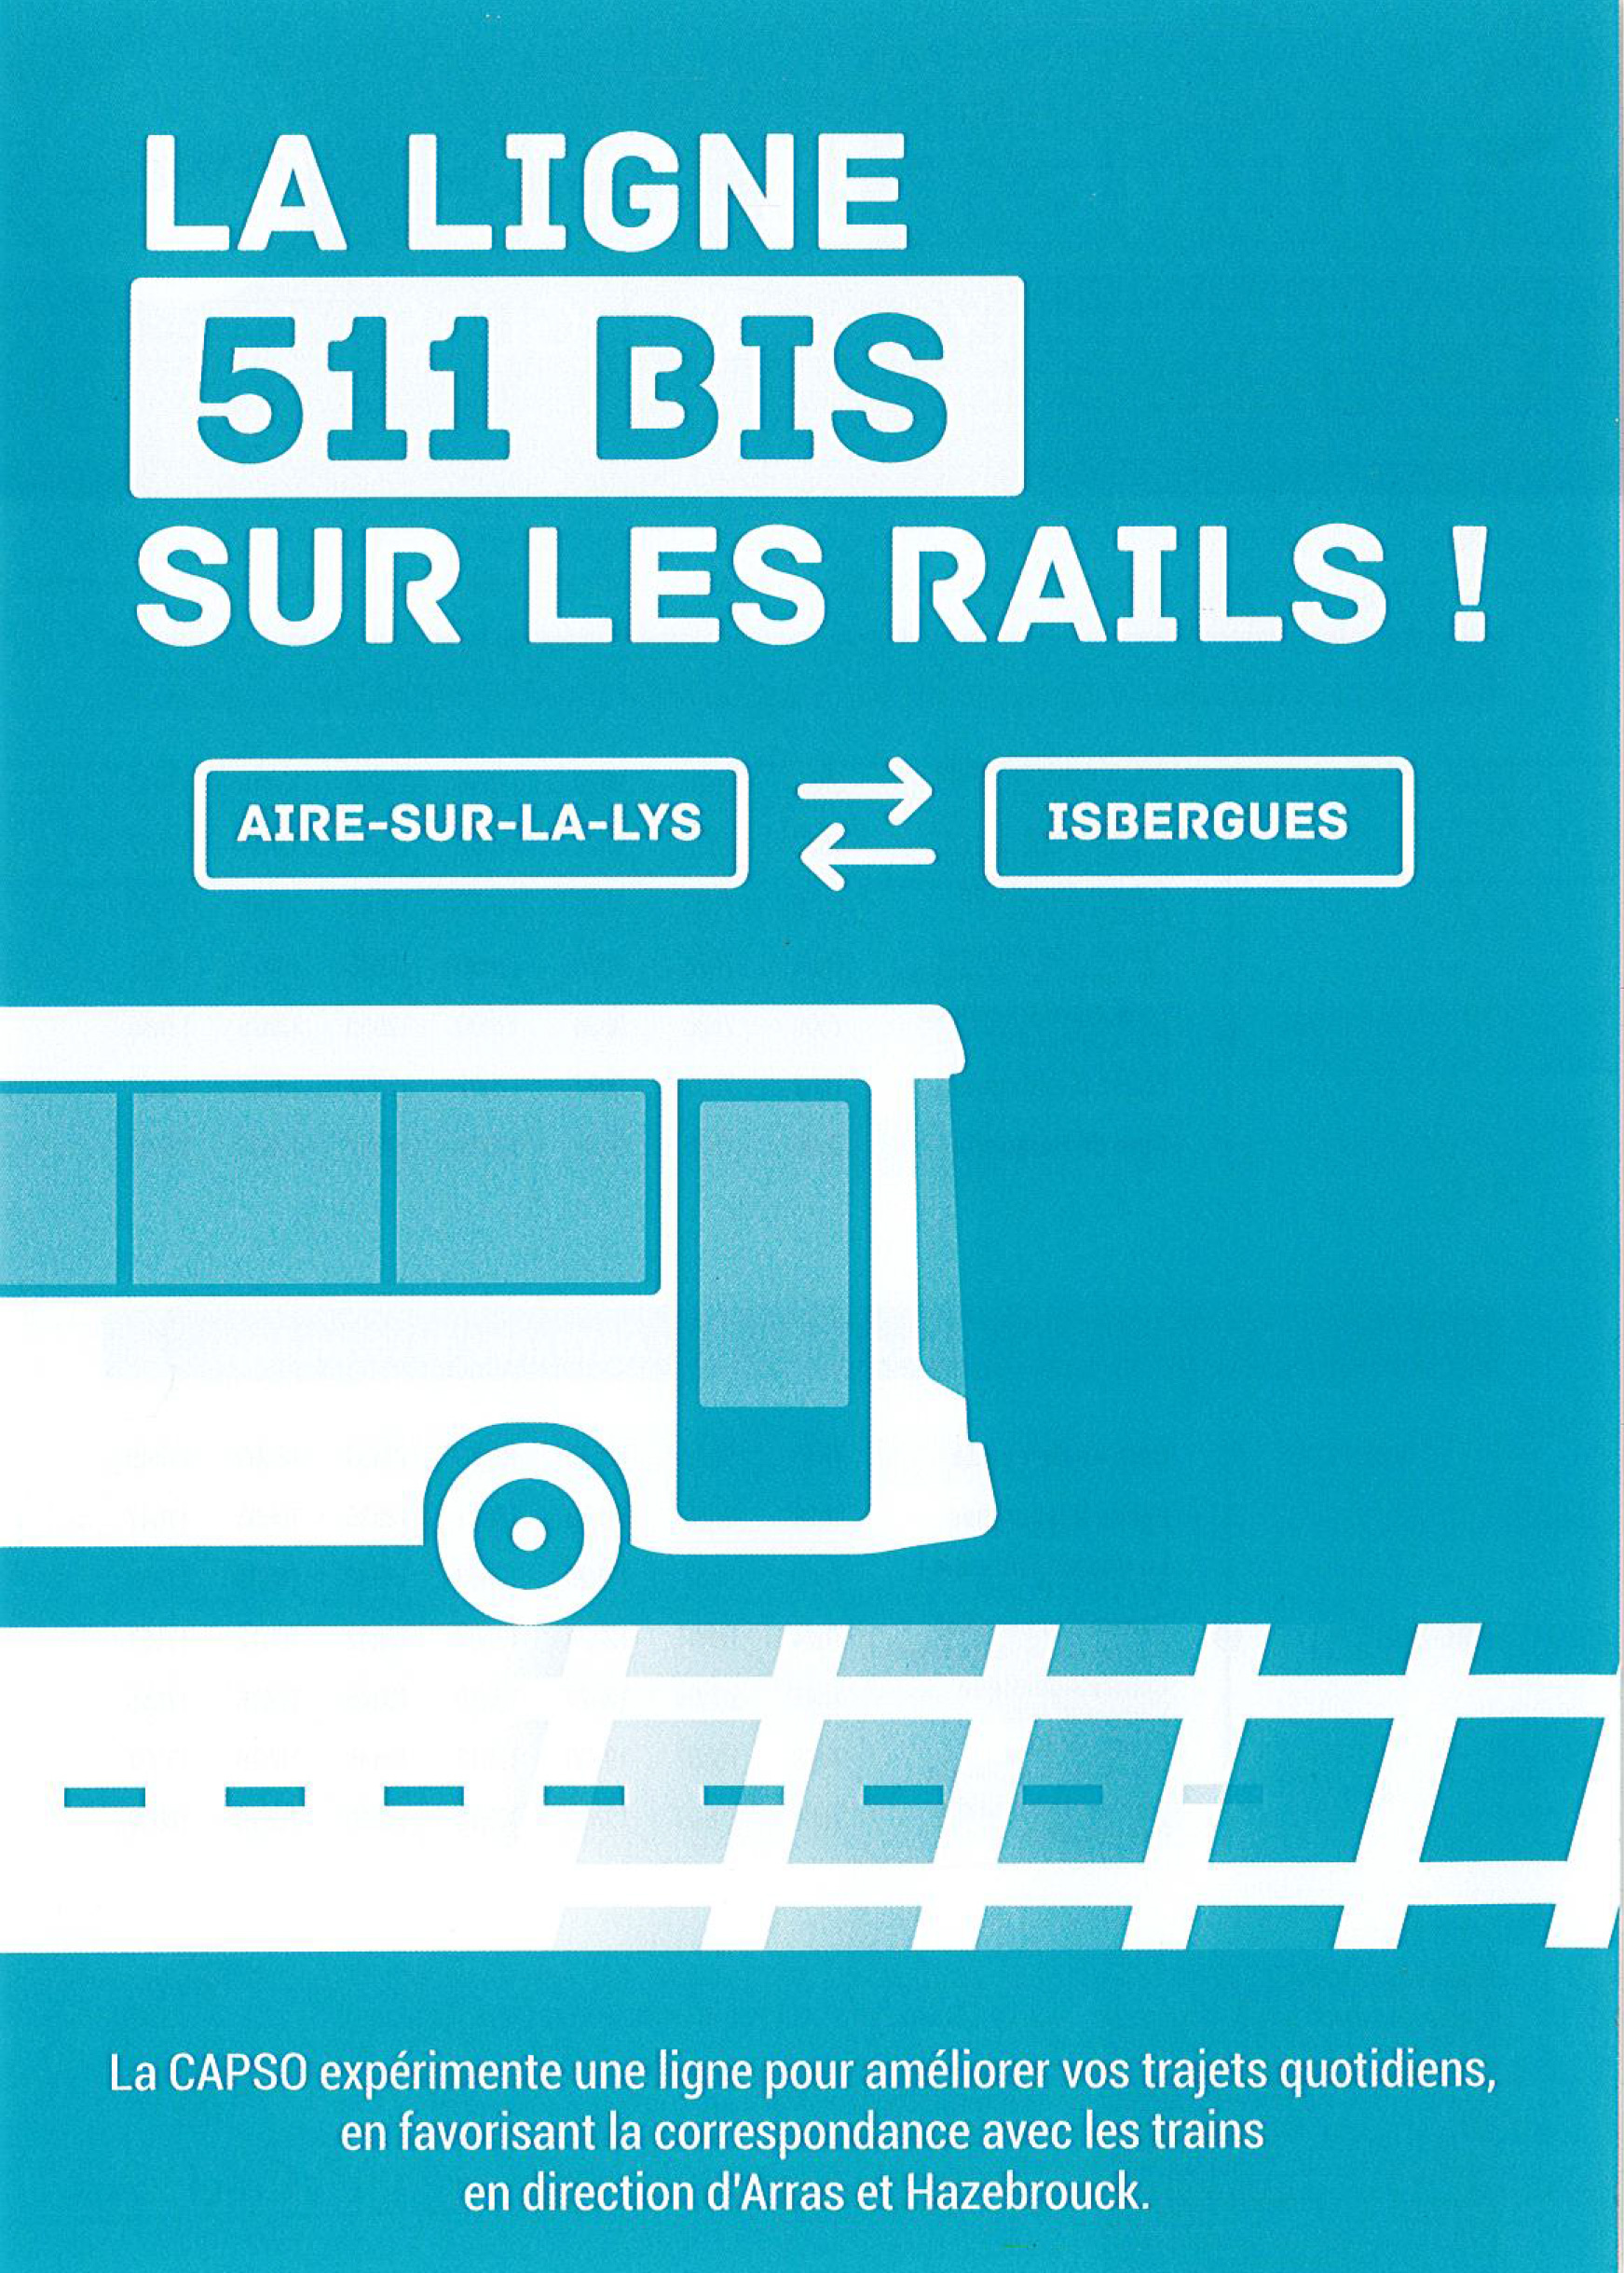 Une nouvelle ligne de bus entre Aire sur la Lys et la gare de Berguette